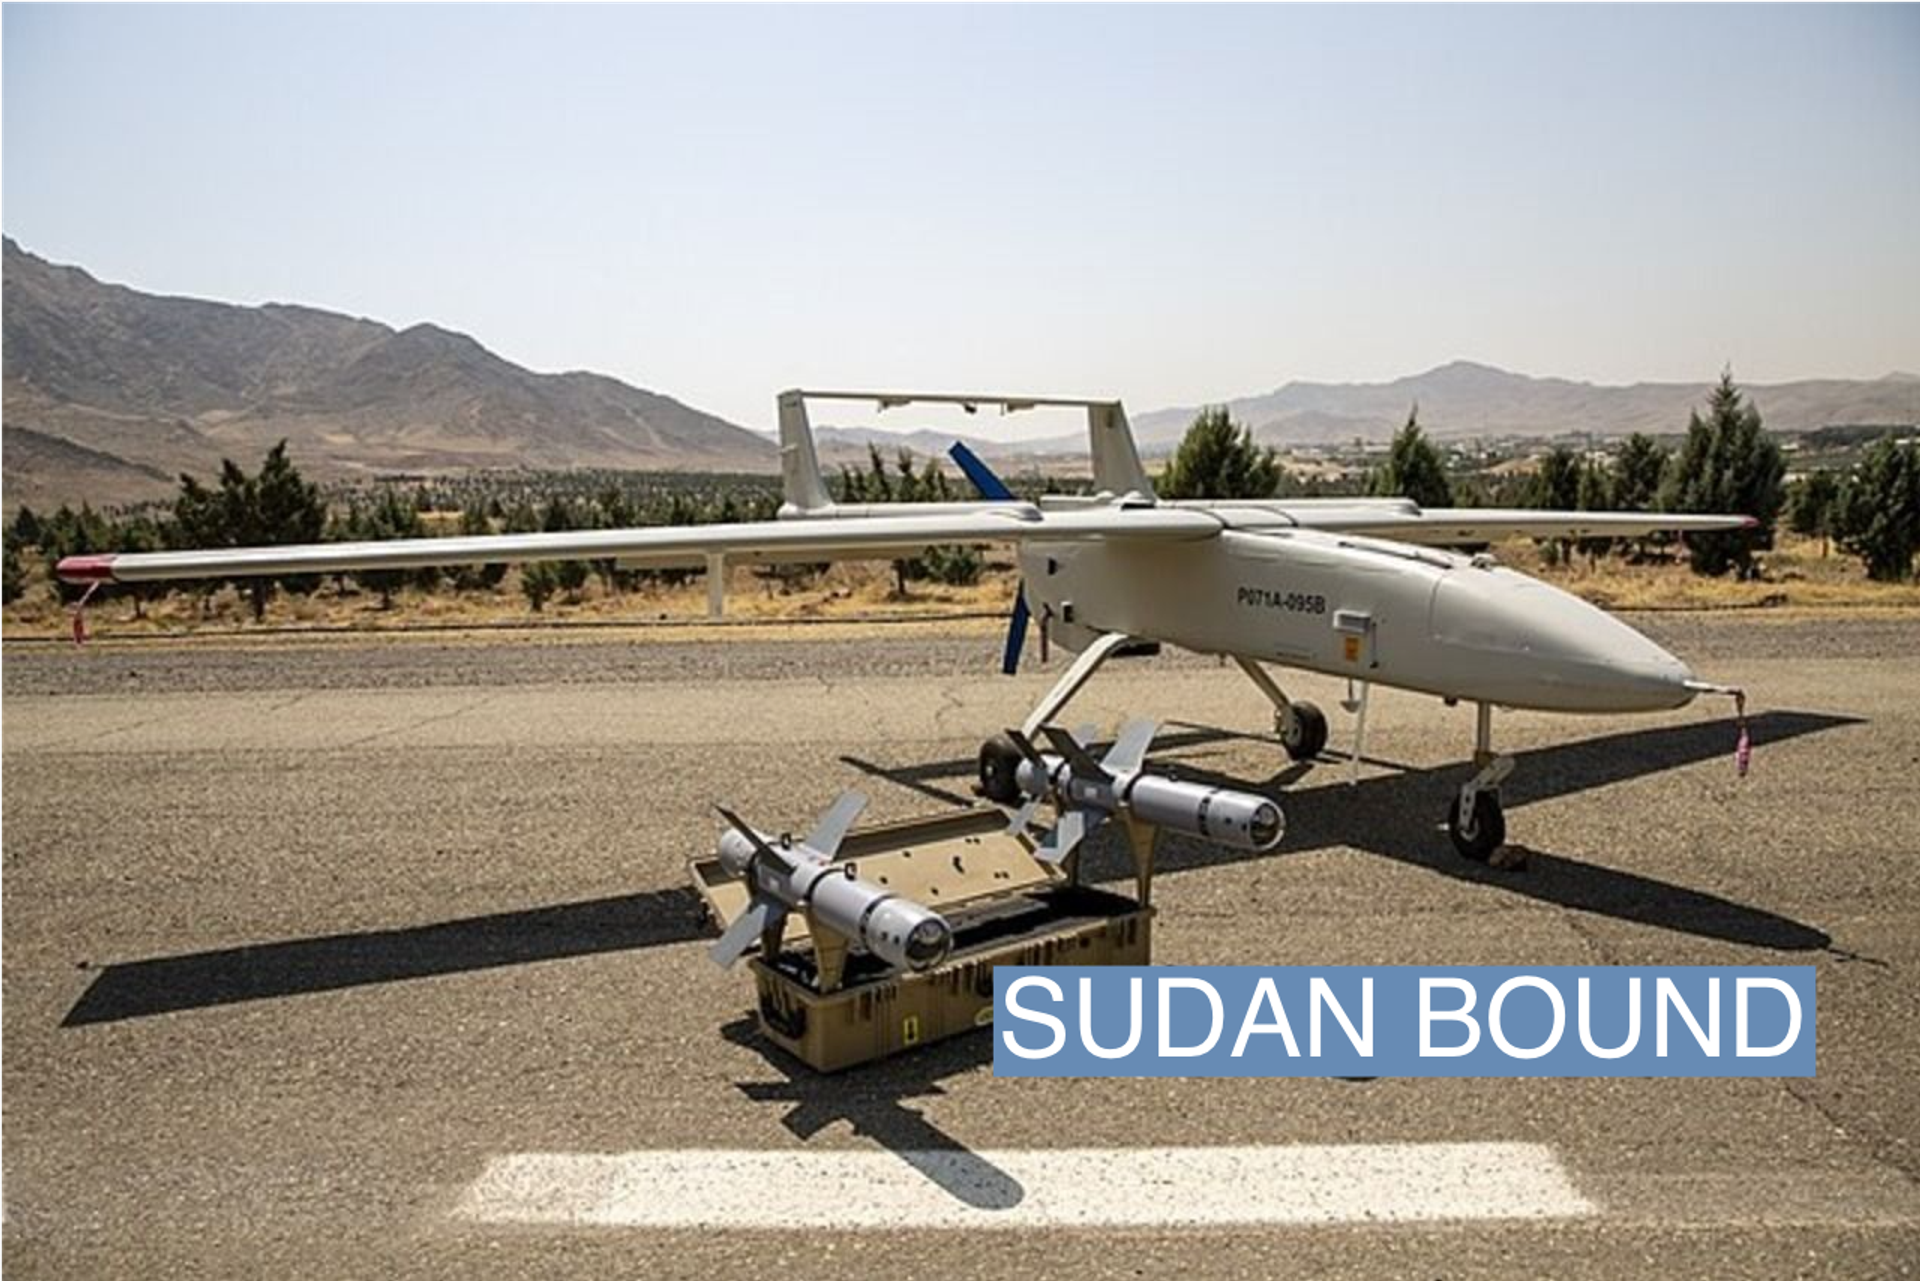 Iran sending attack drones to Sudan’s military (semafor.com)